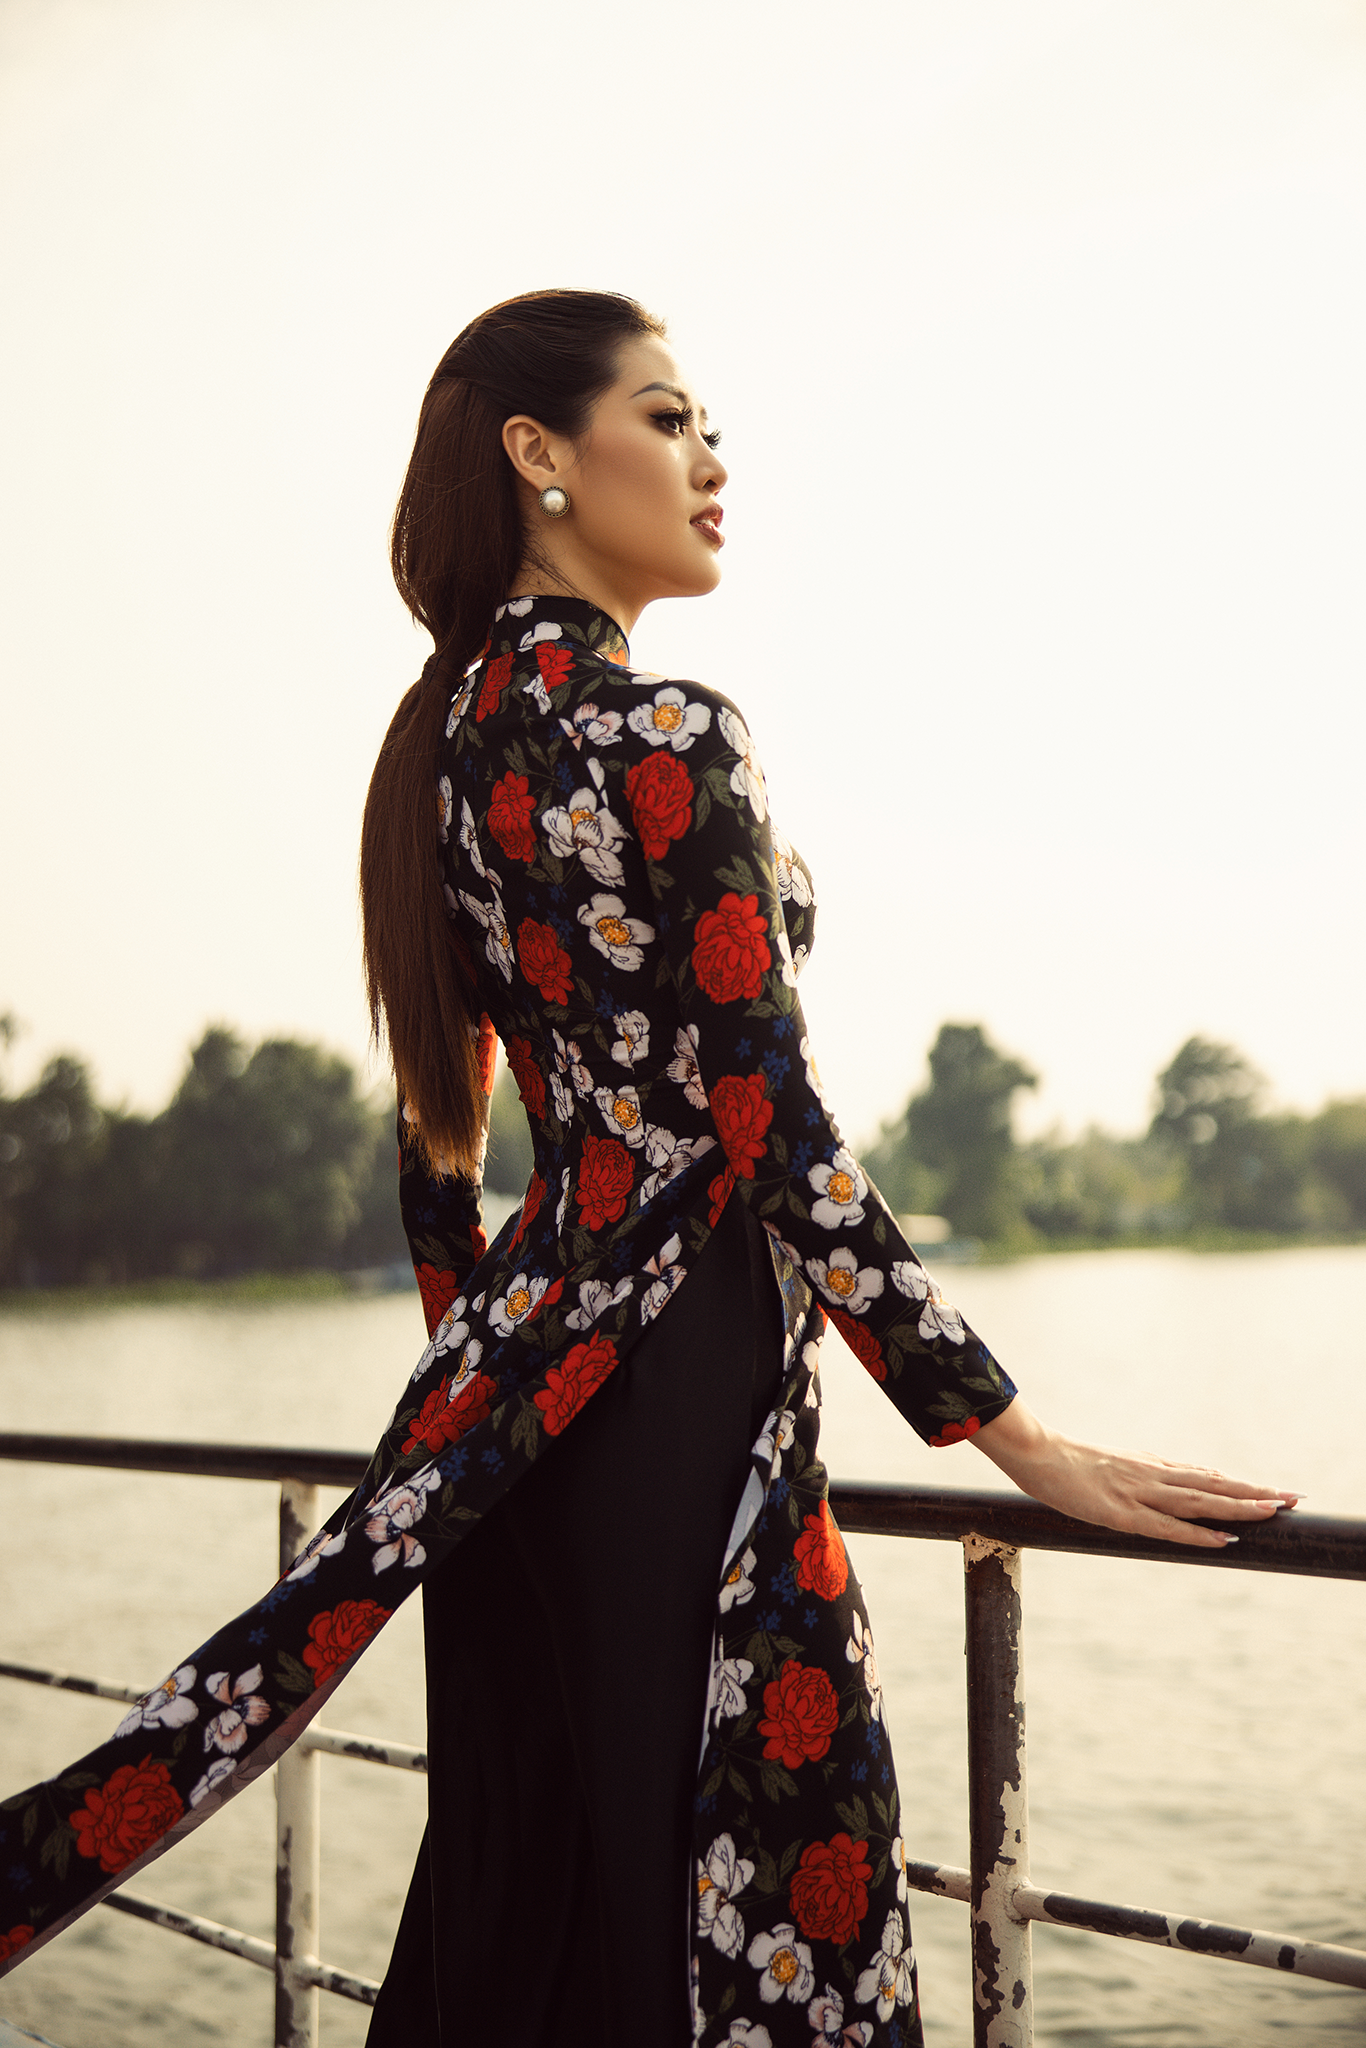 ặc trưng của phụ nữ Việt Nam truyền thống, dịu dàng và đằm thắm. Hoa hậu Khánh Vân chú trọng đặc tả những dòng cảm xúc ấy bằng những dáng nhẹ nhàng, nữ tính, khéo khoe đường cong trong bộ áo dài